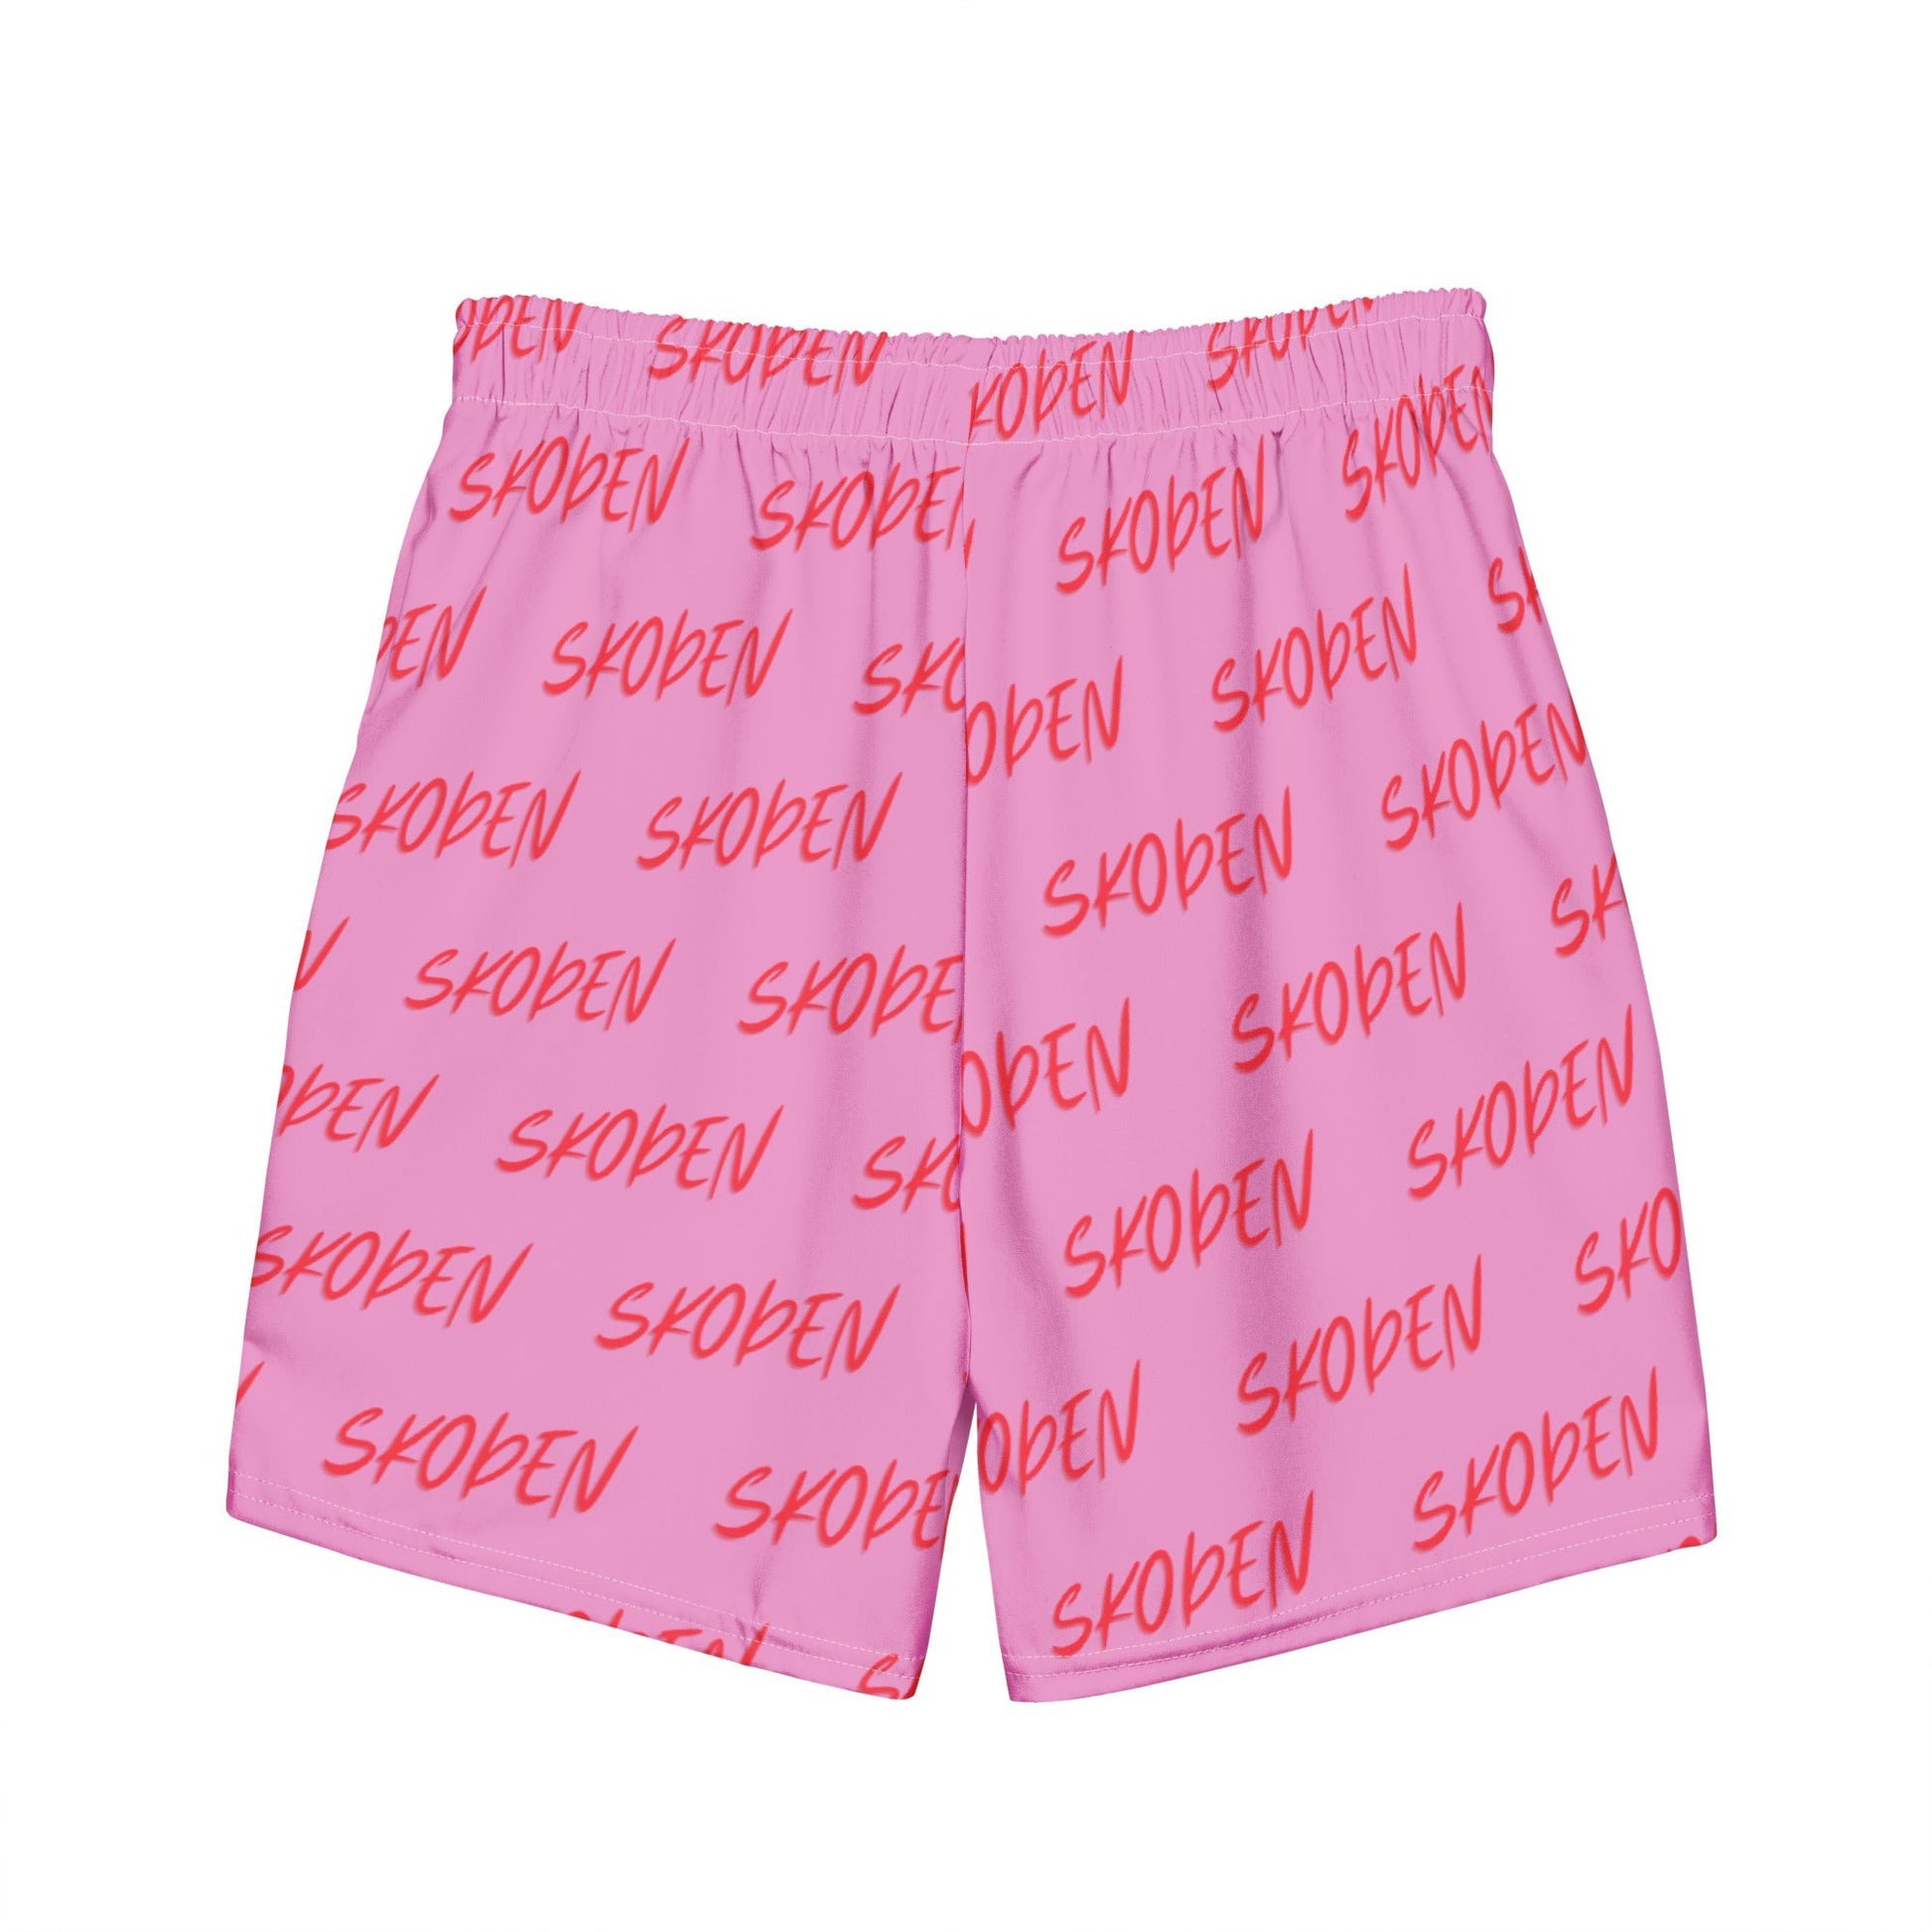 Men's Skoden Pink swim trunks - Nikikw Designs